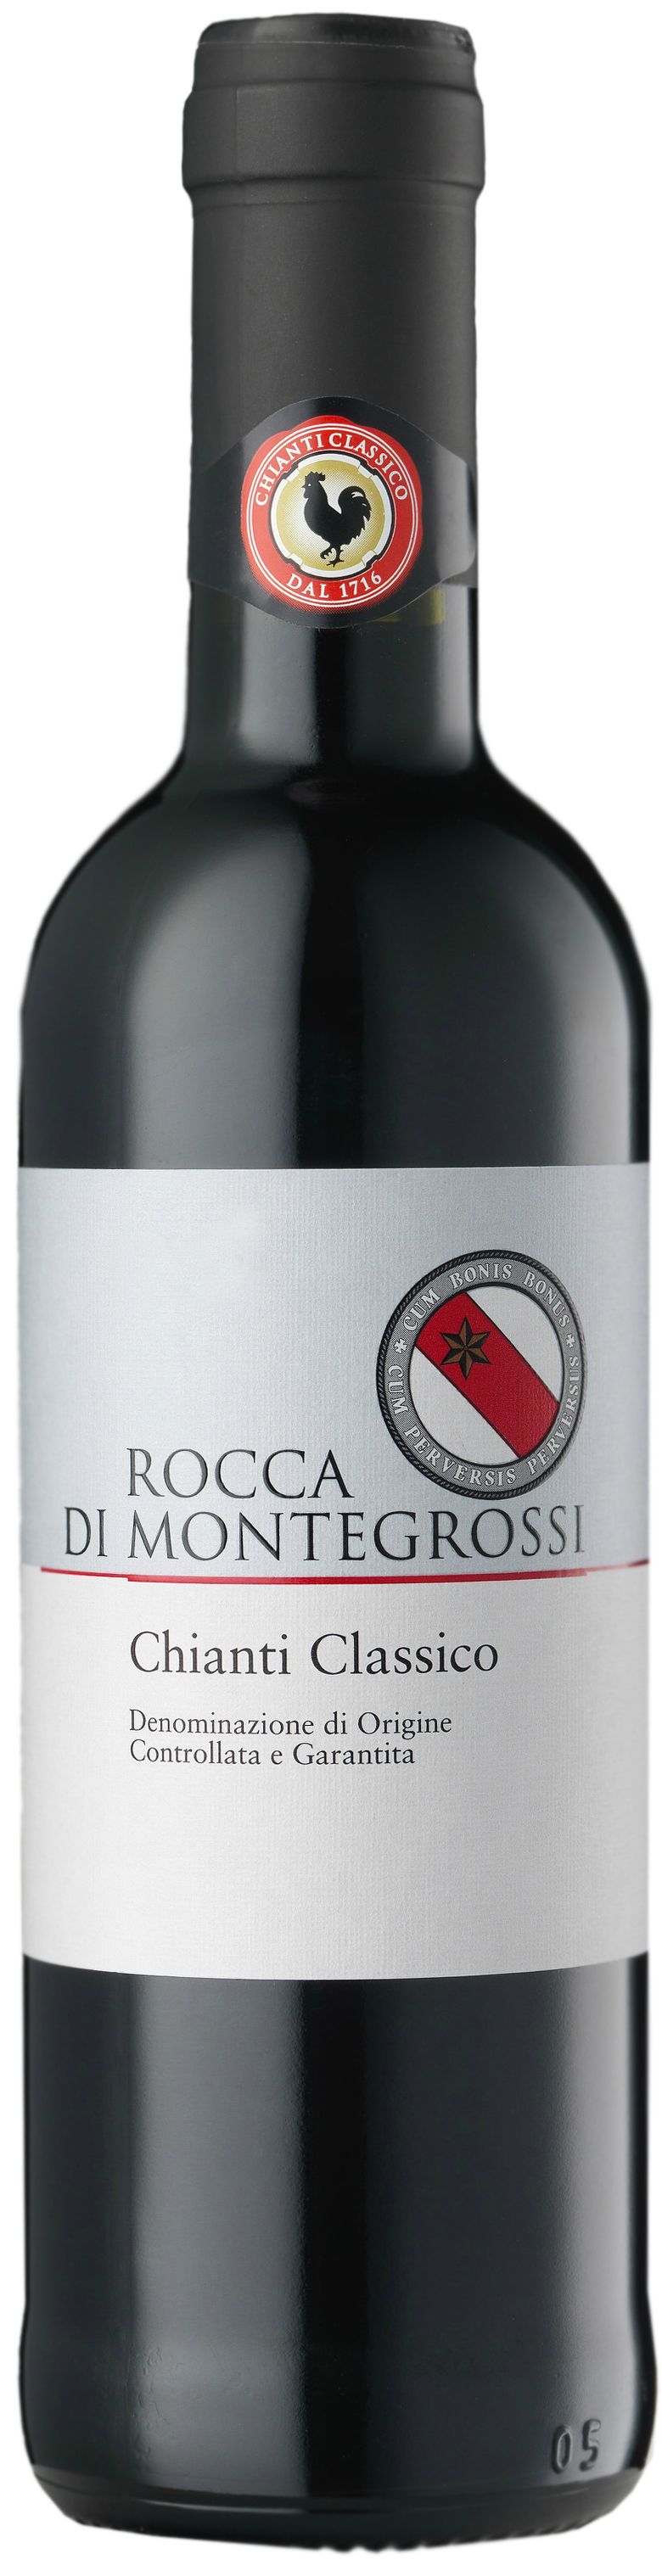 Rocca Di Montegrossi, Chianti Classico, 2009